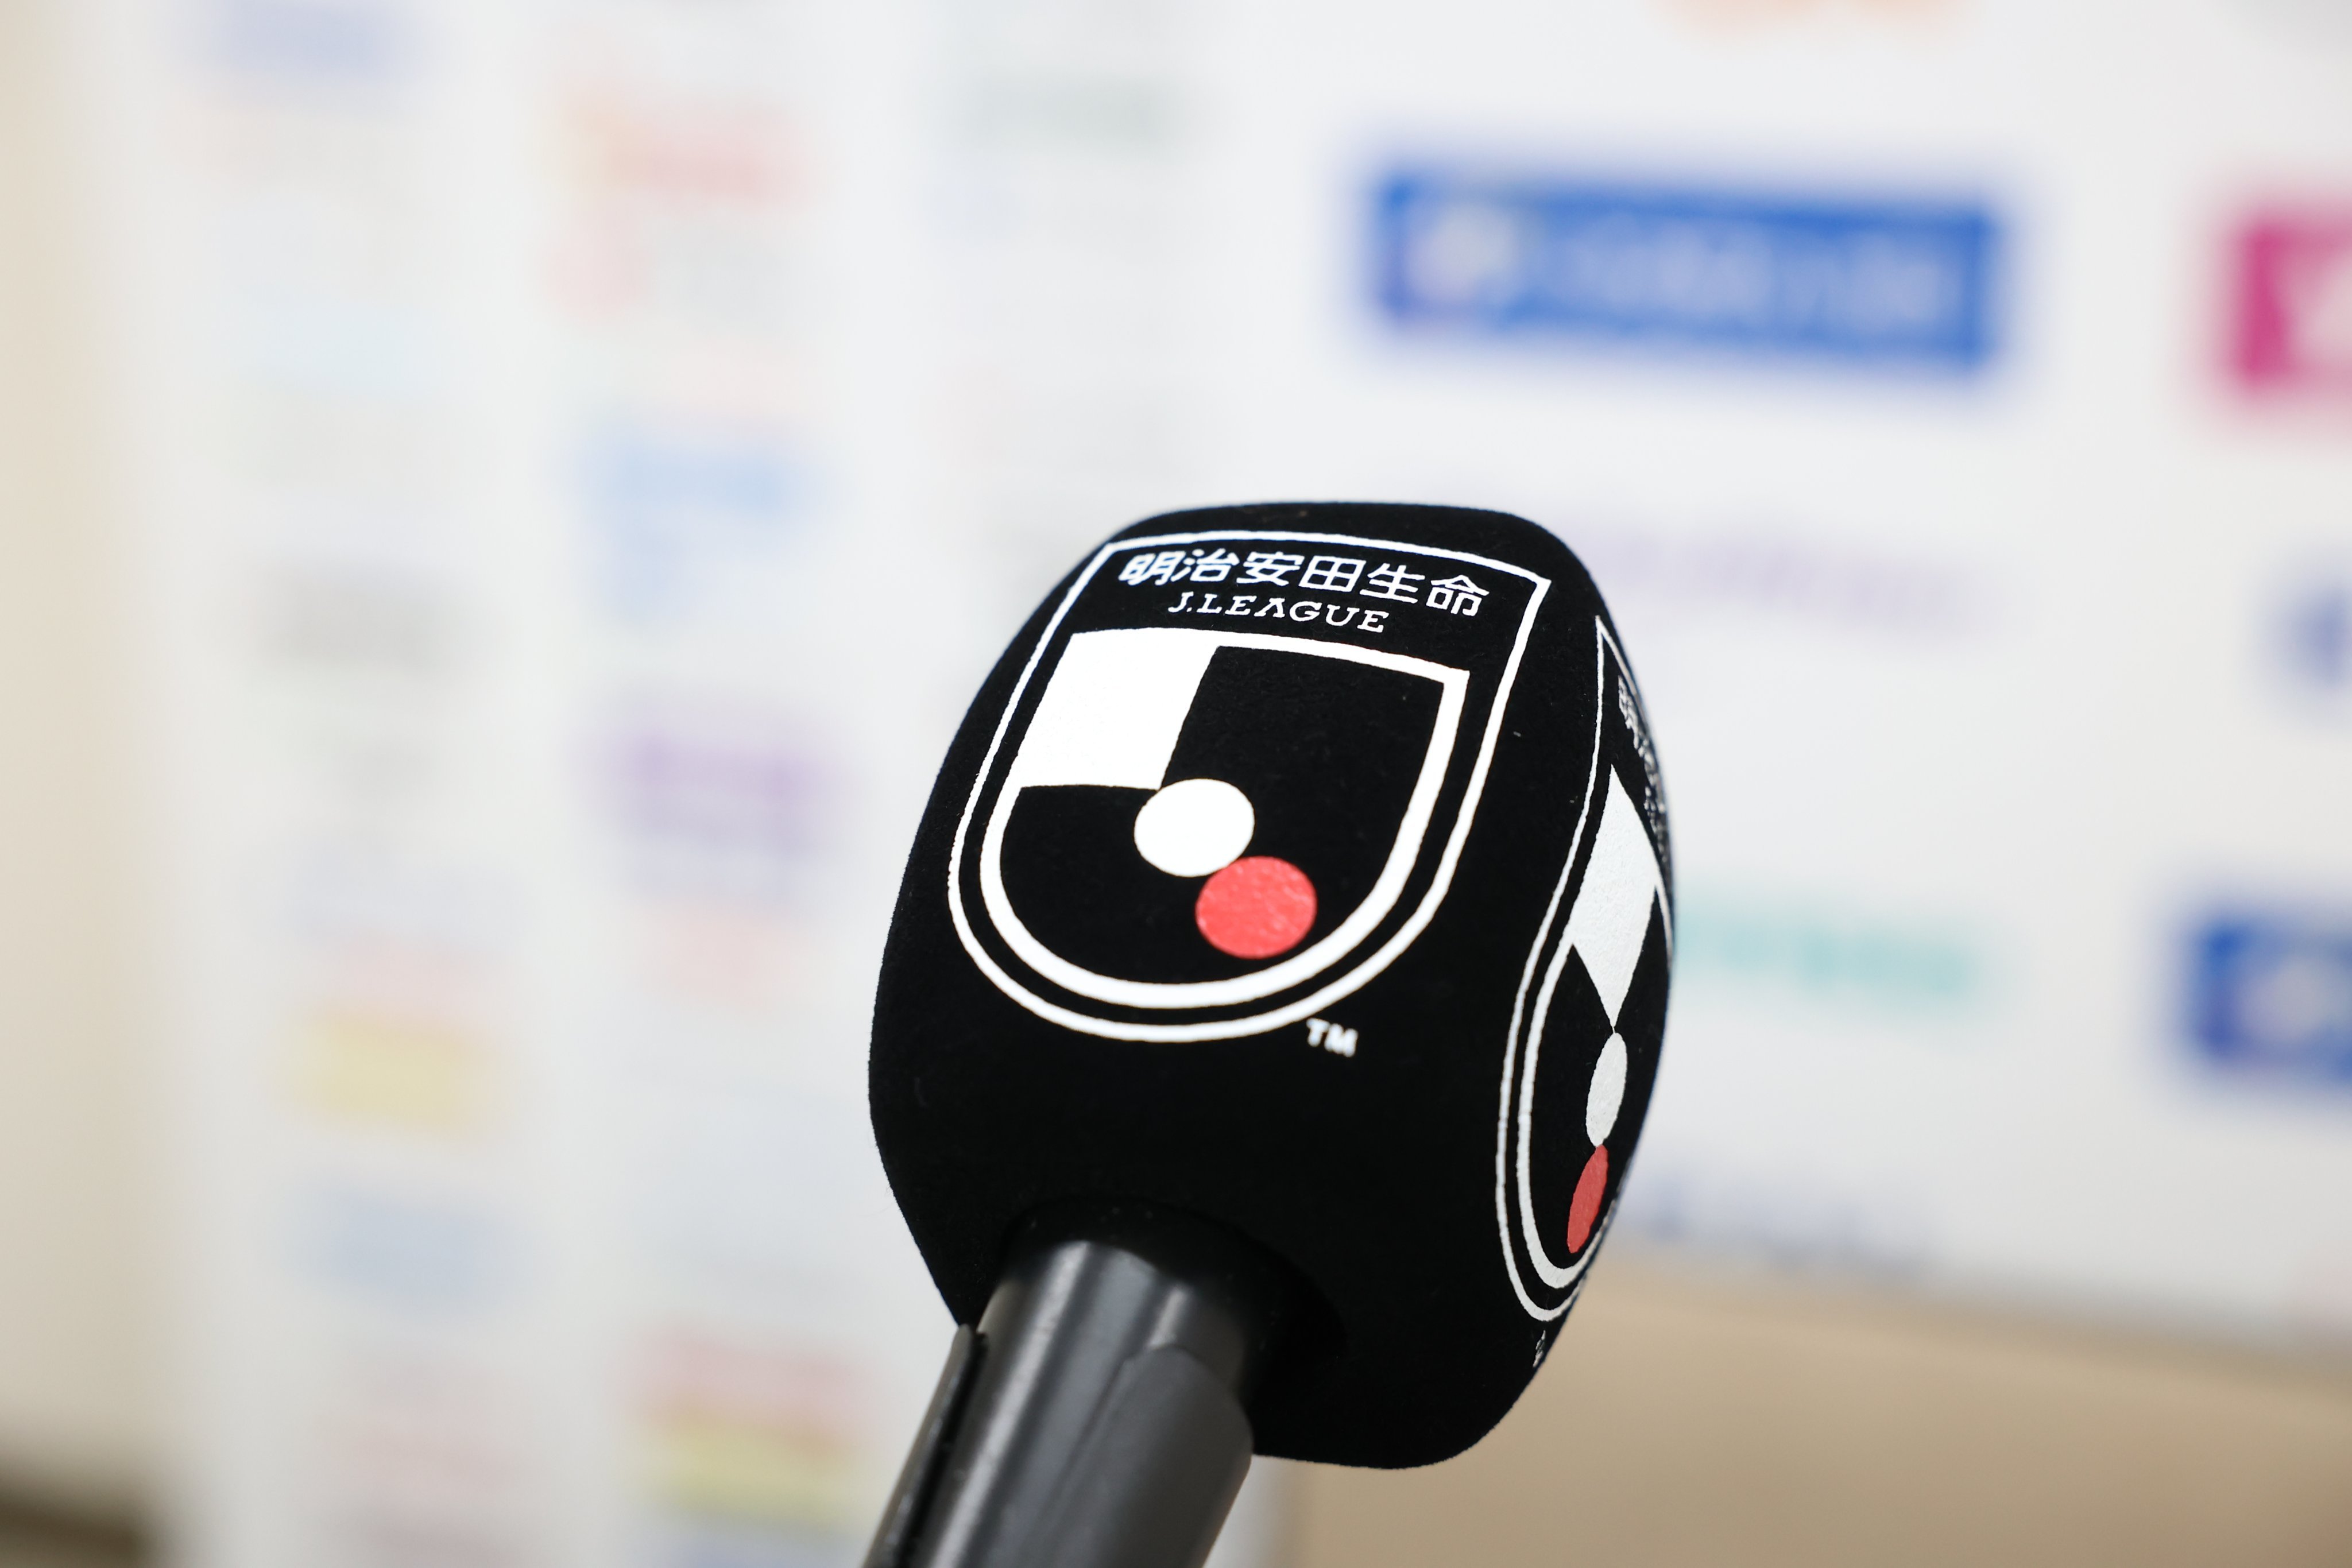 Jadwal Siaran Langsung J1 League Pekan Ke-14